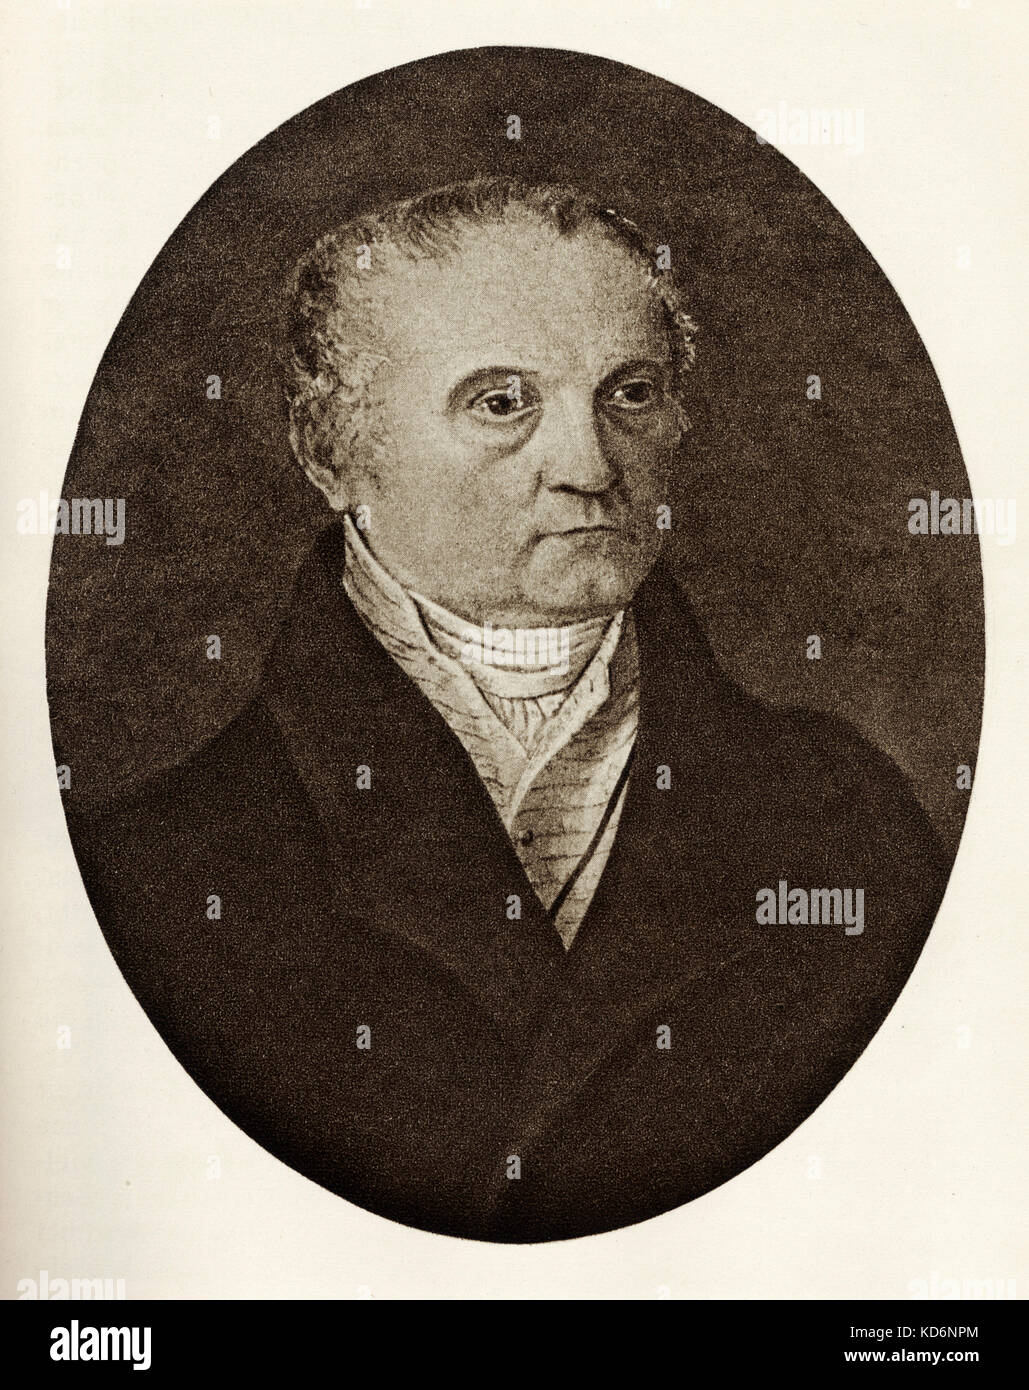 Fanz Schuberts Vater. Franz S., Österreichischer Komponist, 31. Januar 1797 - 19. November 1828. Stockfoto